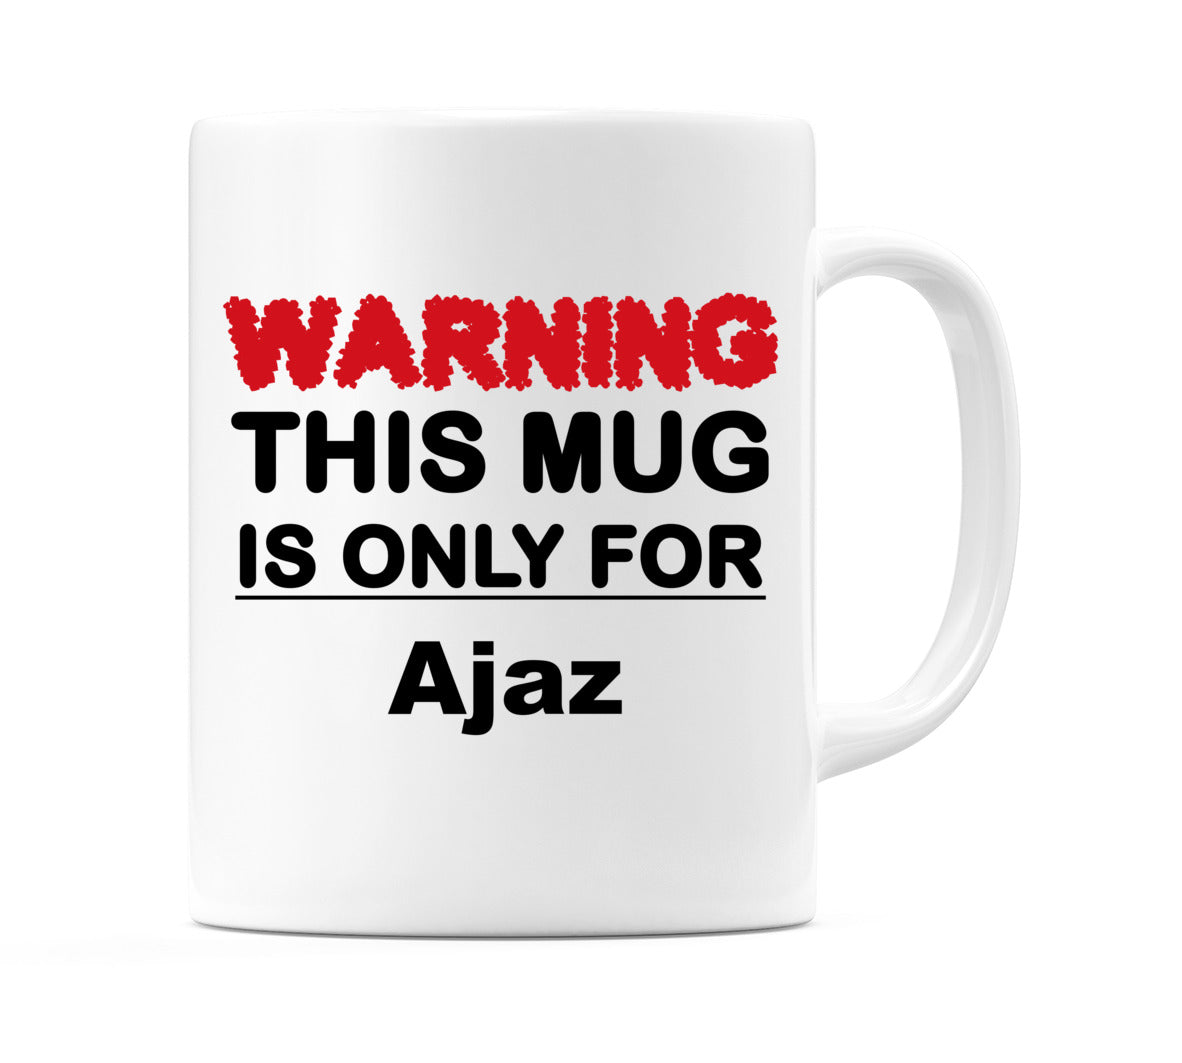 Warning This Mug is ONLY for Ajaz Mug